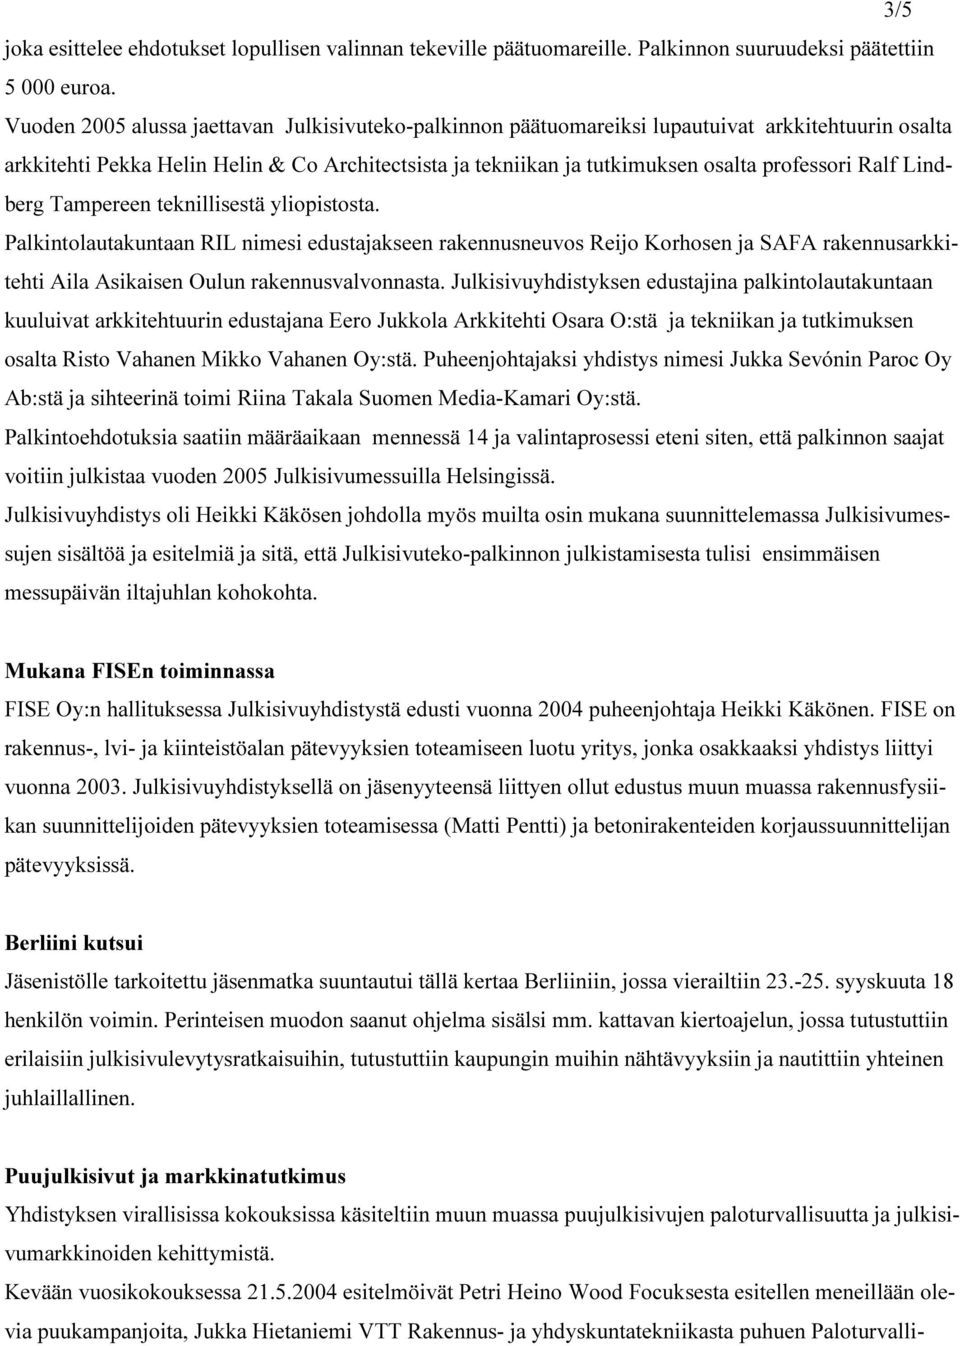 Ralf Lindberg Tampereen teknillisestä yliopistosta. Palkintolautakuntaan RIL nimesi edustajakseen rakennusneuvos Reijo Korhosen ja SAFA rakennusarkkitehti Aila Asikaisen Oulun rakennusvalvonnasta.